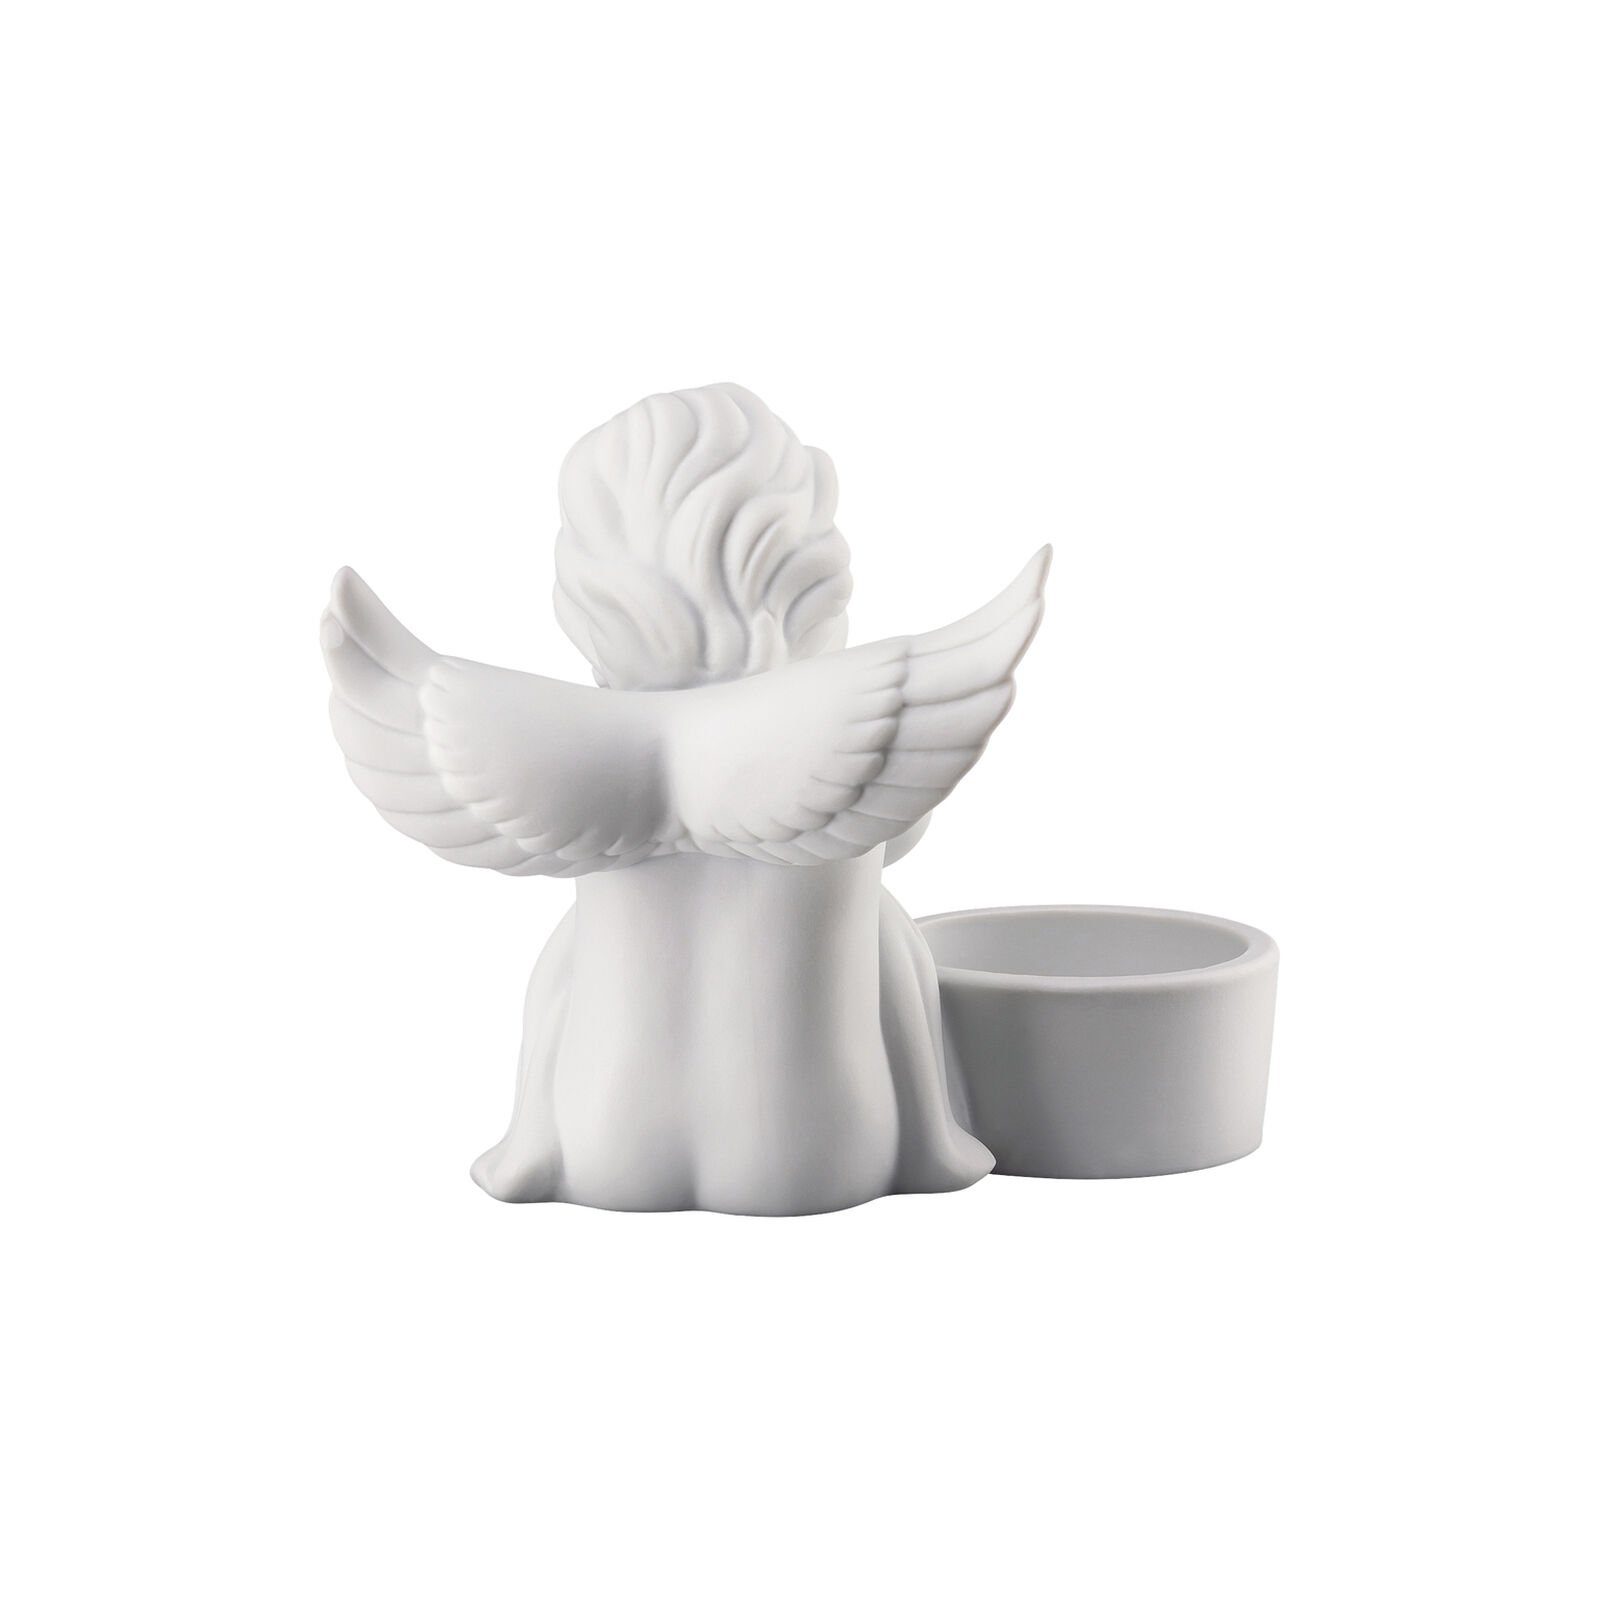 Tischlicht Teelichthalter Weiß Rosenthal sitzend Engel matt Engel